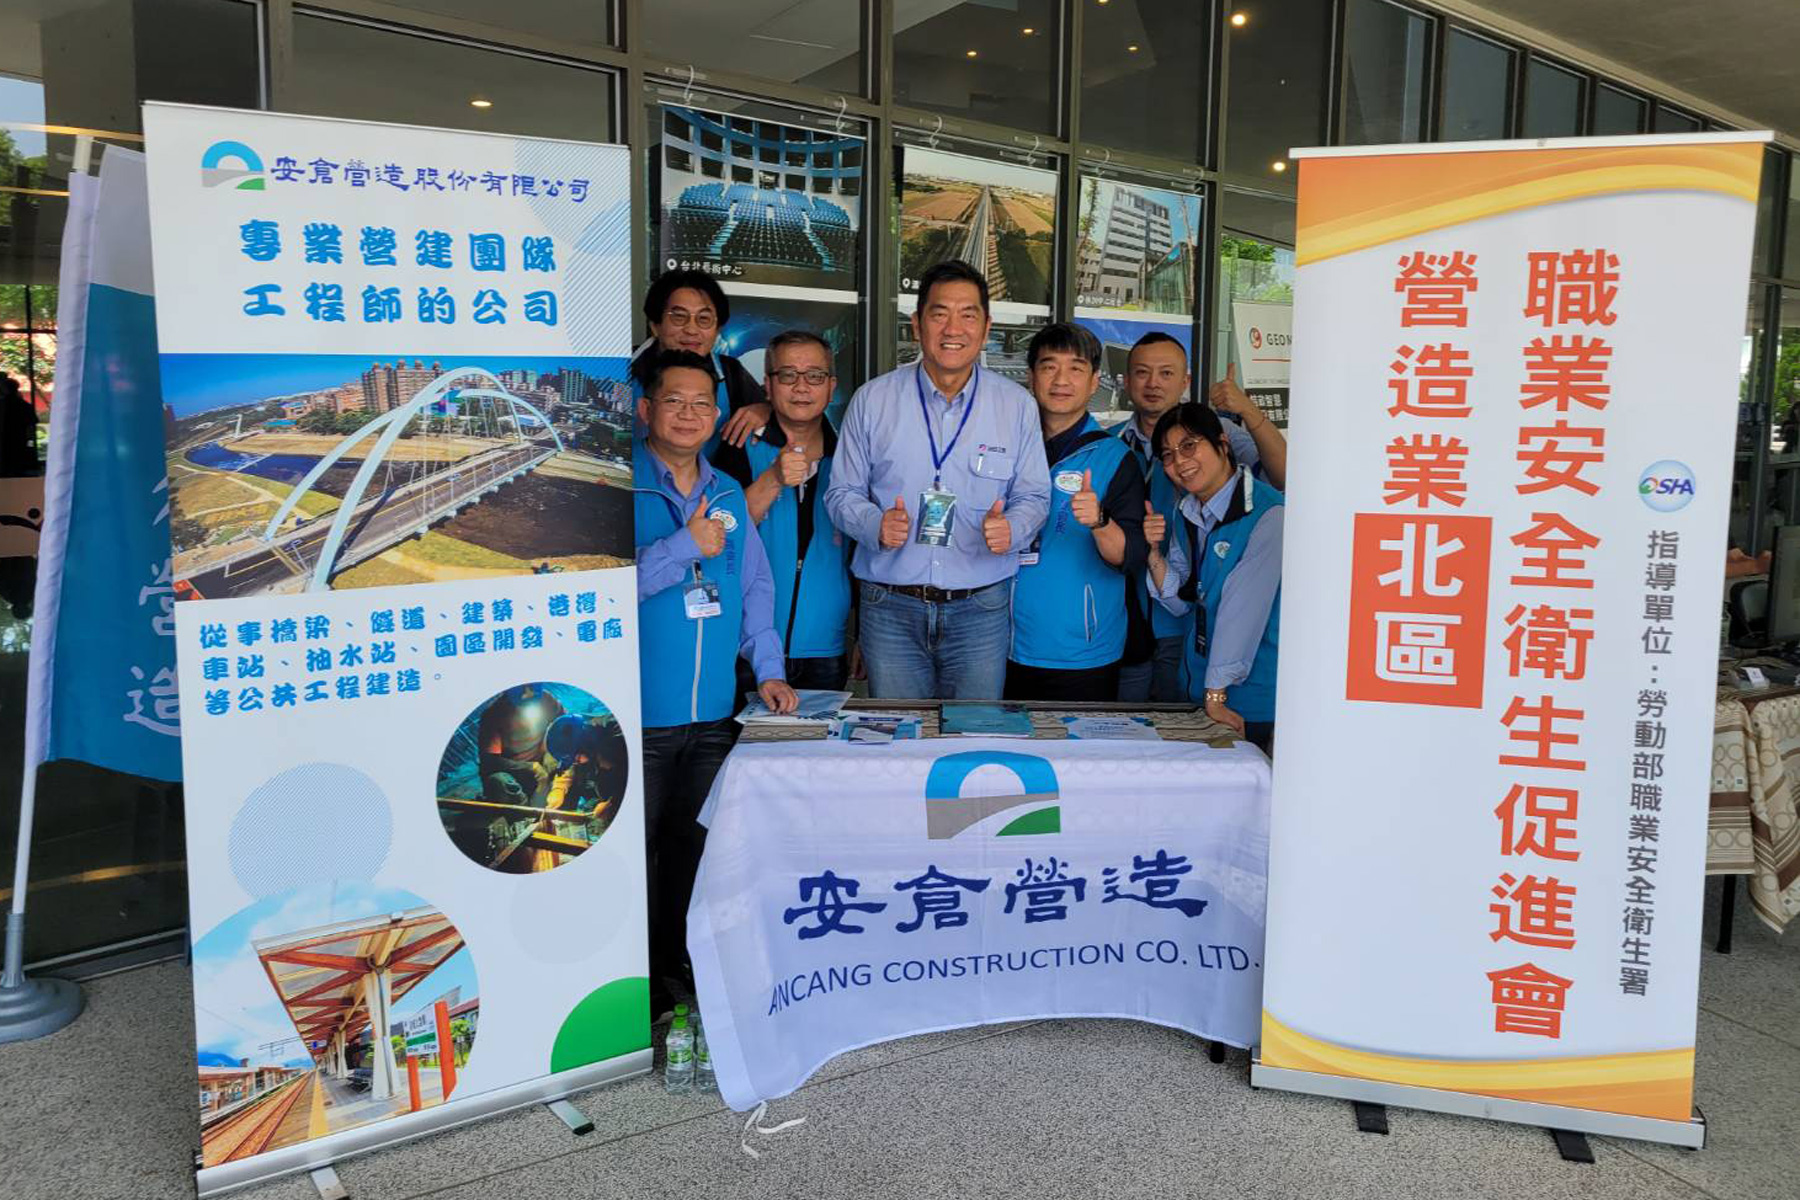 本公司協助辦理淡江大學土木工程學系舉辦「土木科技展」圓滿成功